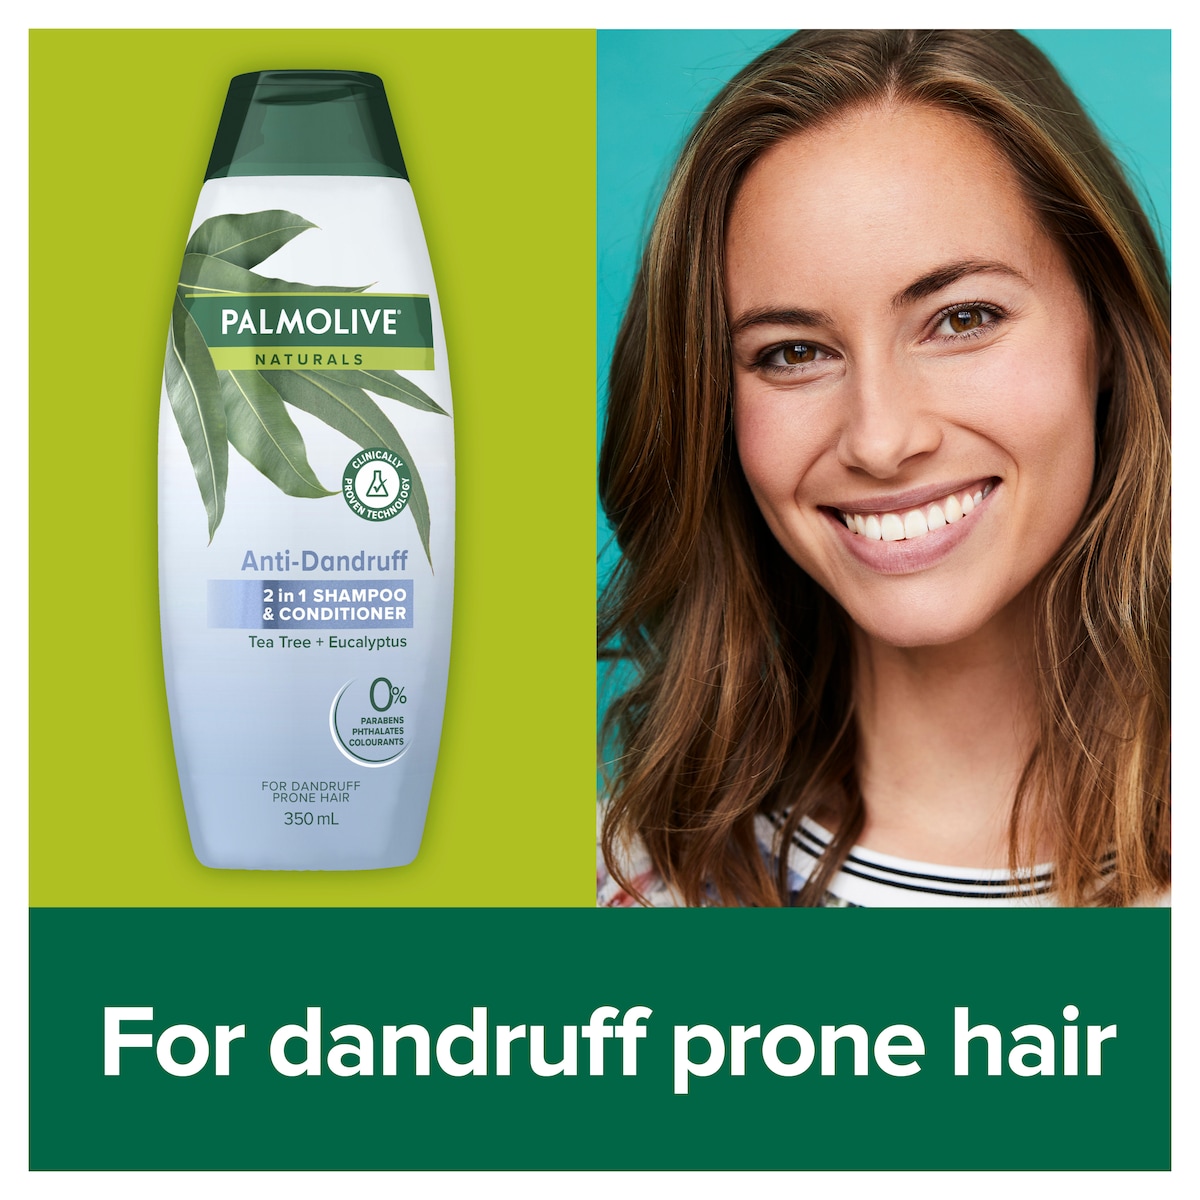 Palmolive Anti-Dandruff 2 in 1 Shampoo & Conditioner 350ml